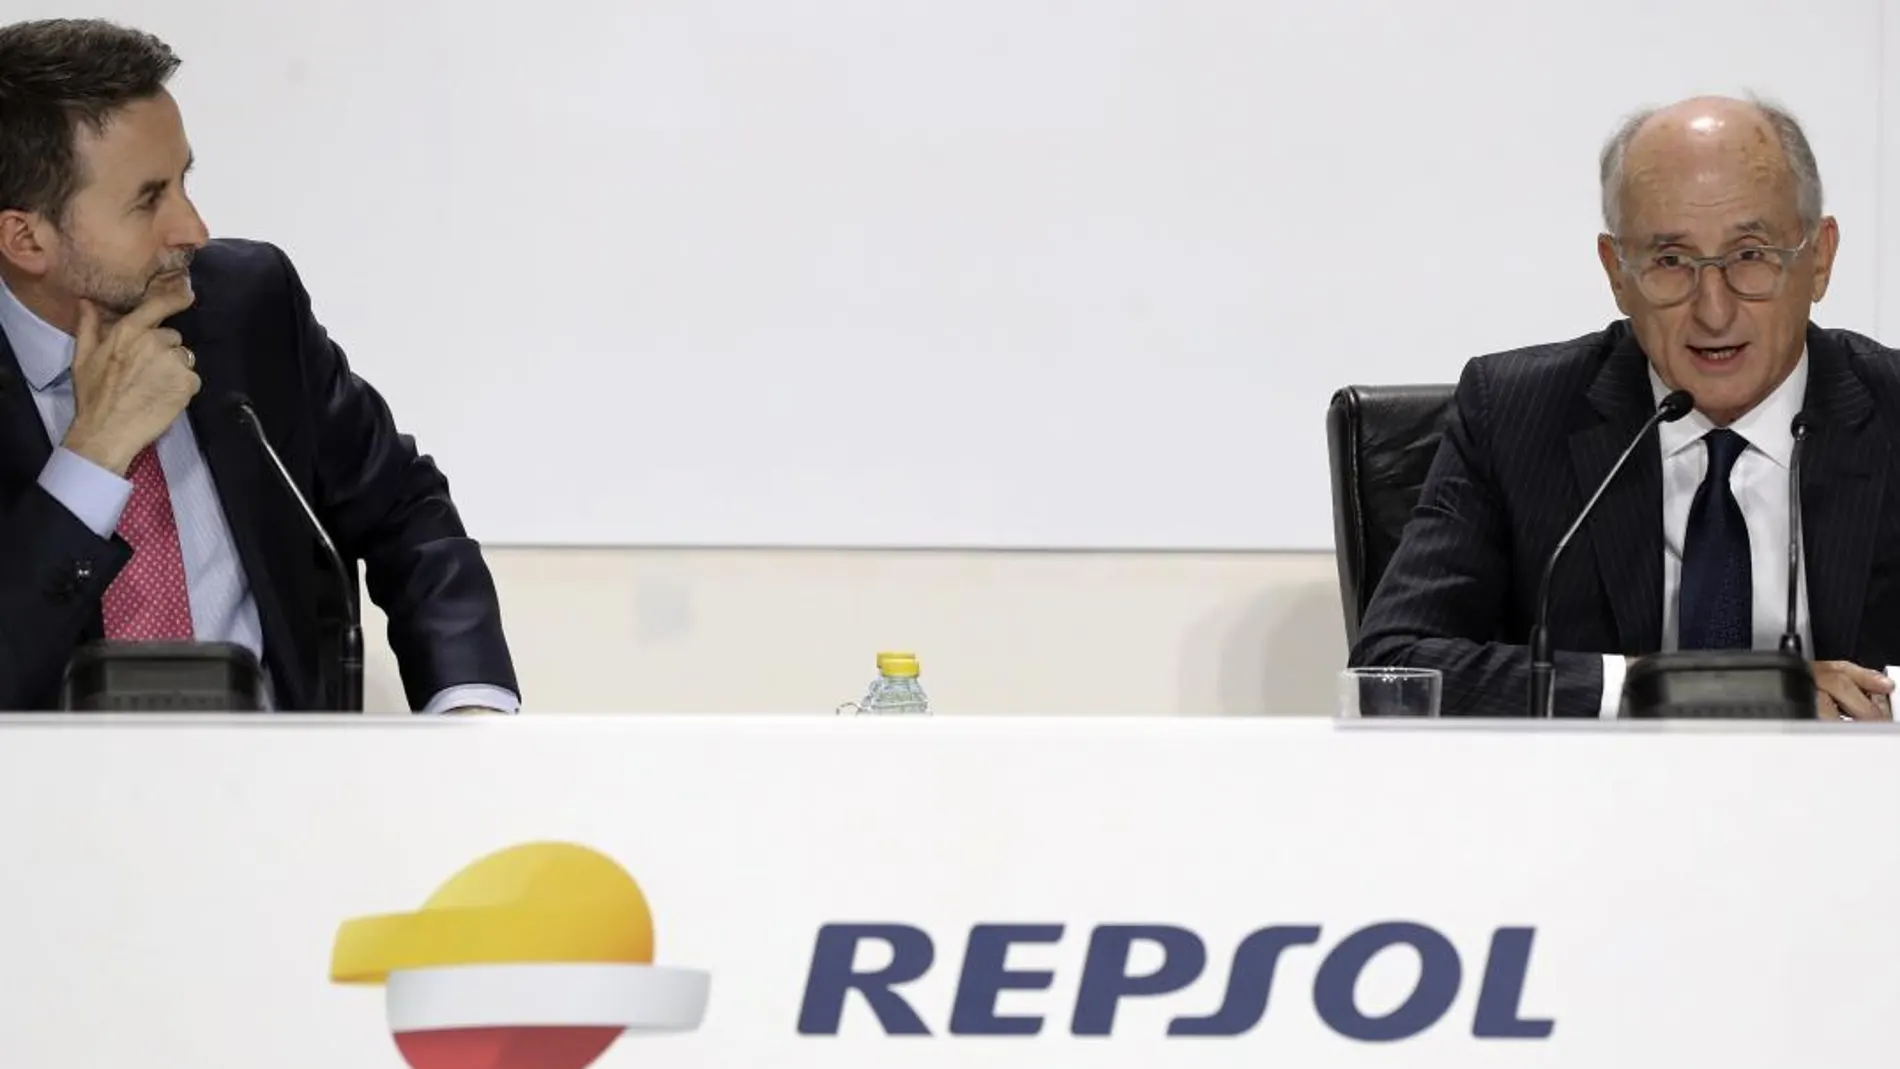 El presidente de Repsol, Antonio Brufau, y el consejero delegado, Josu Jon Imaz